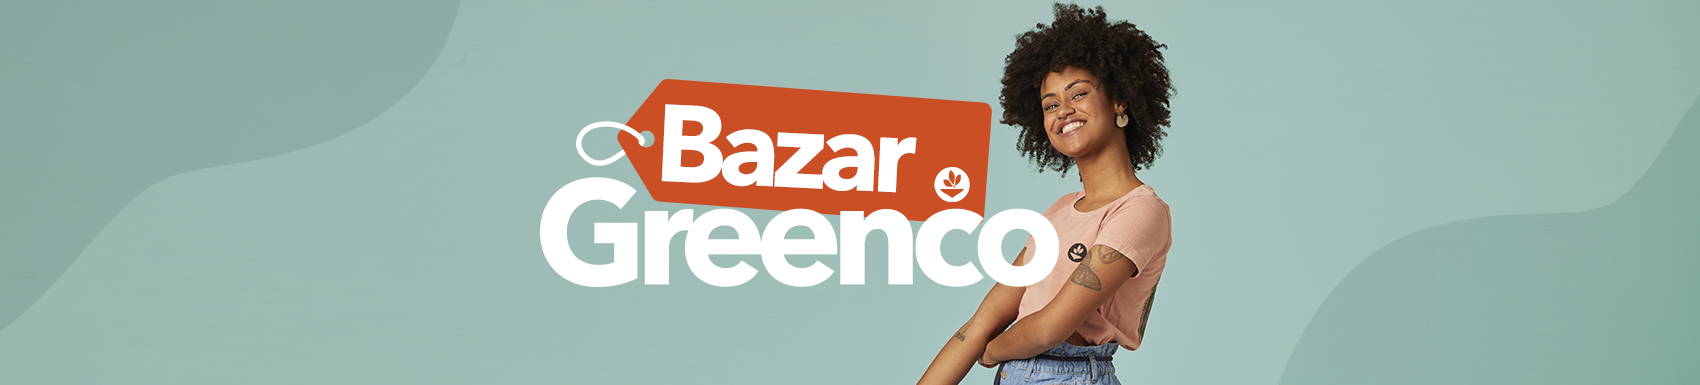 bazar greenco